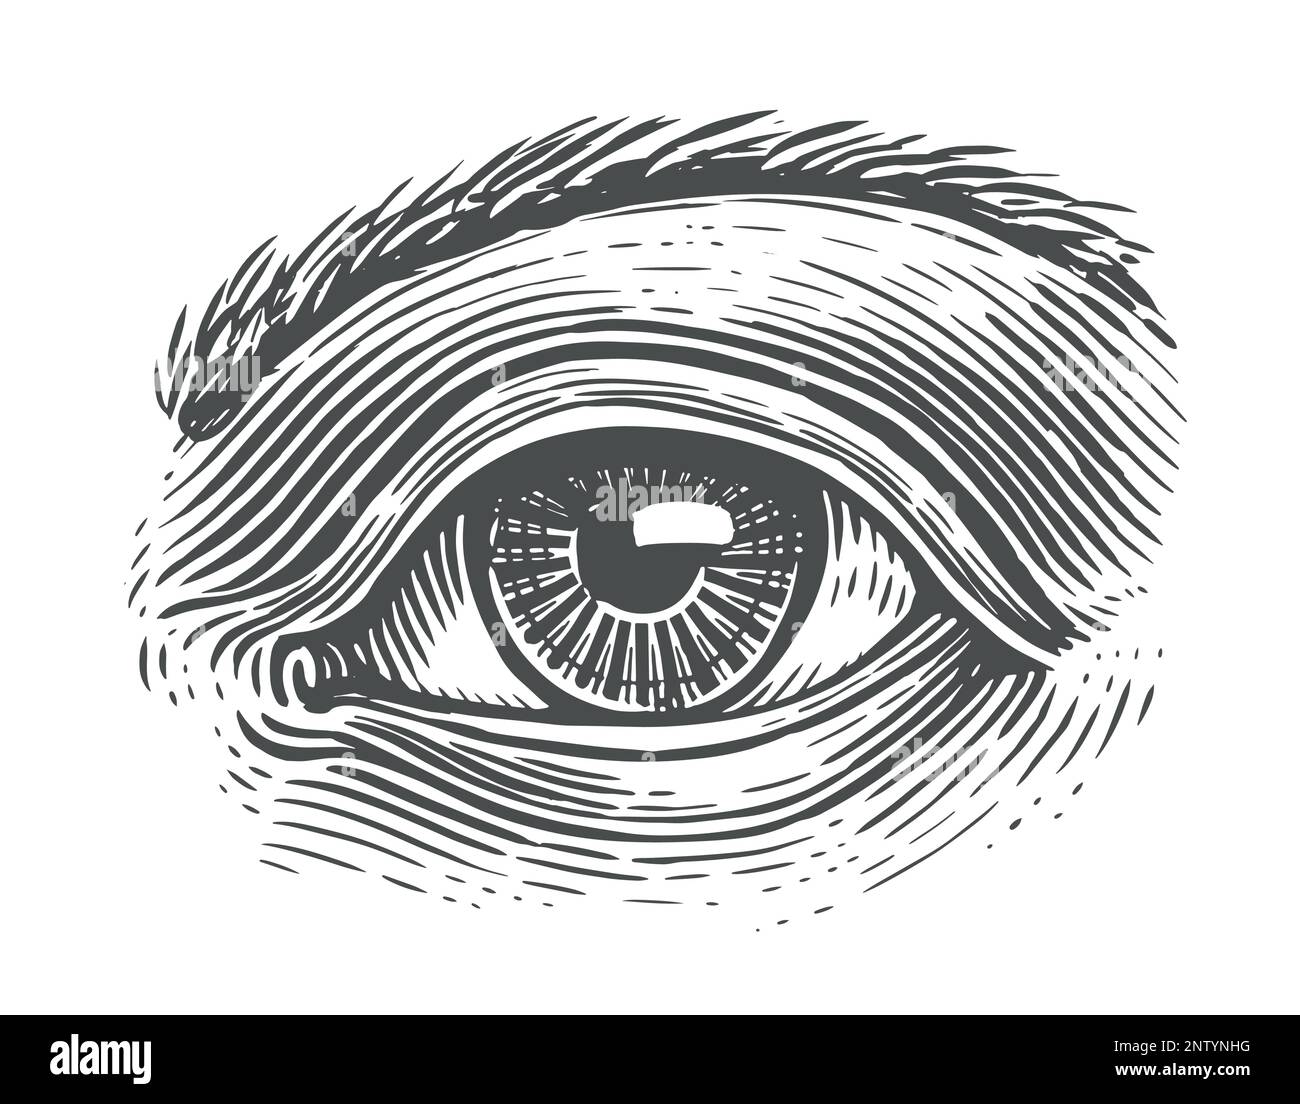 Menschliches Auge mit Gravur. Handgezeichnete Skizze - Vektordarstellung Stock Vektor